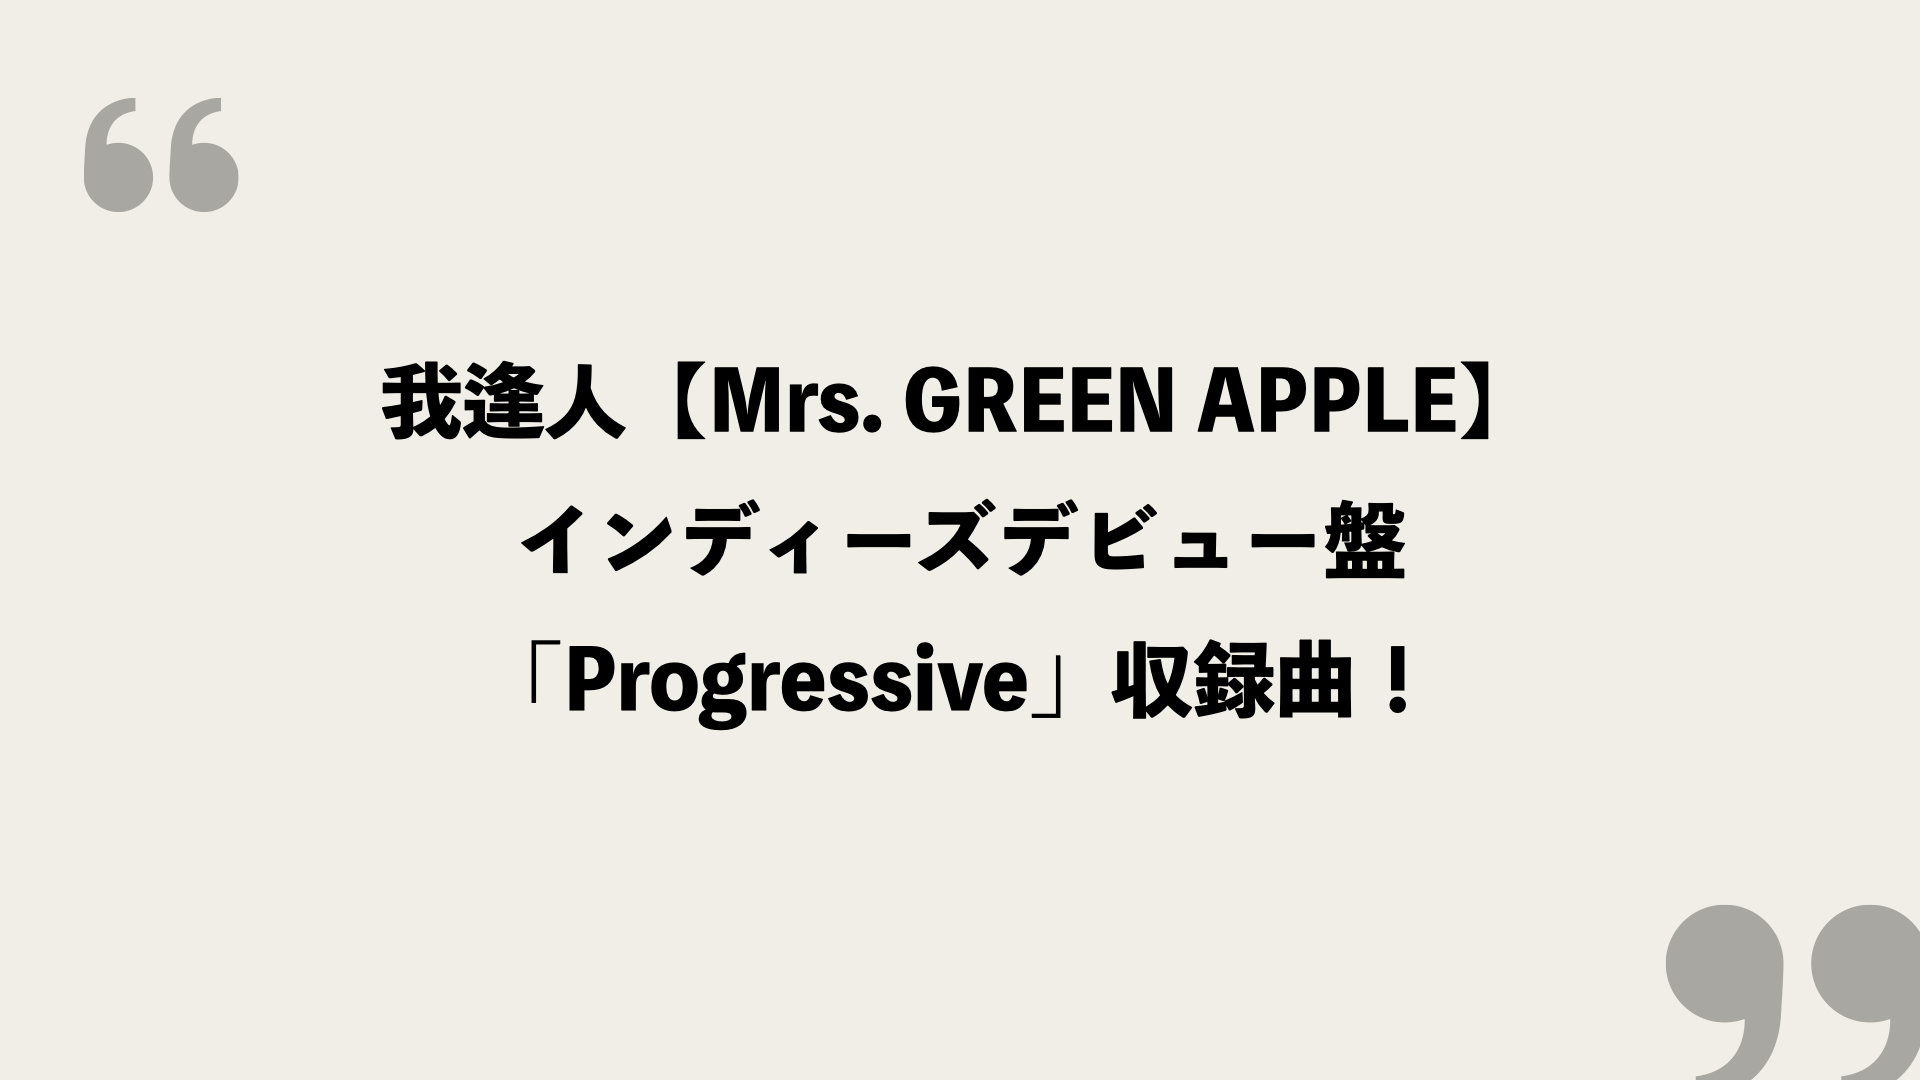 我逢人 Mrs Green Apple 歌詞の意味を考察 インディーズデビュー盤 Progressive 収録曲 Framu Media